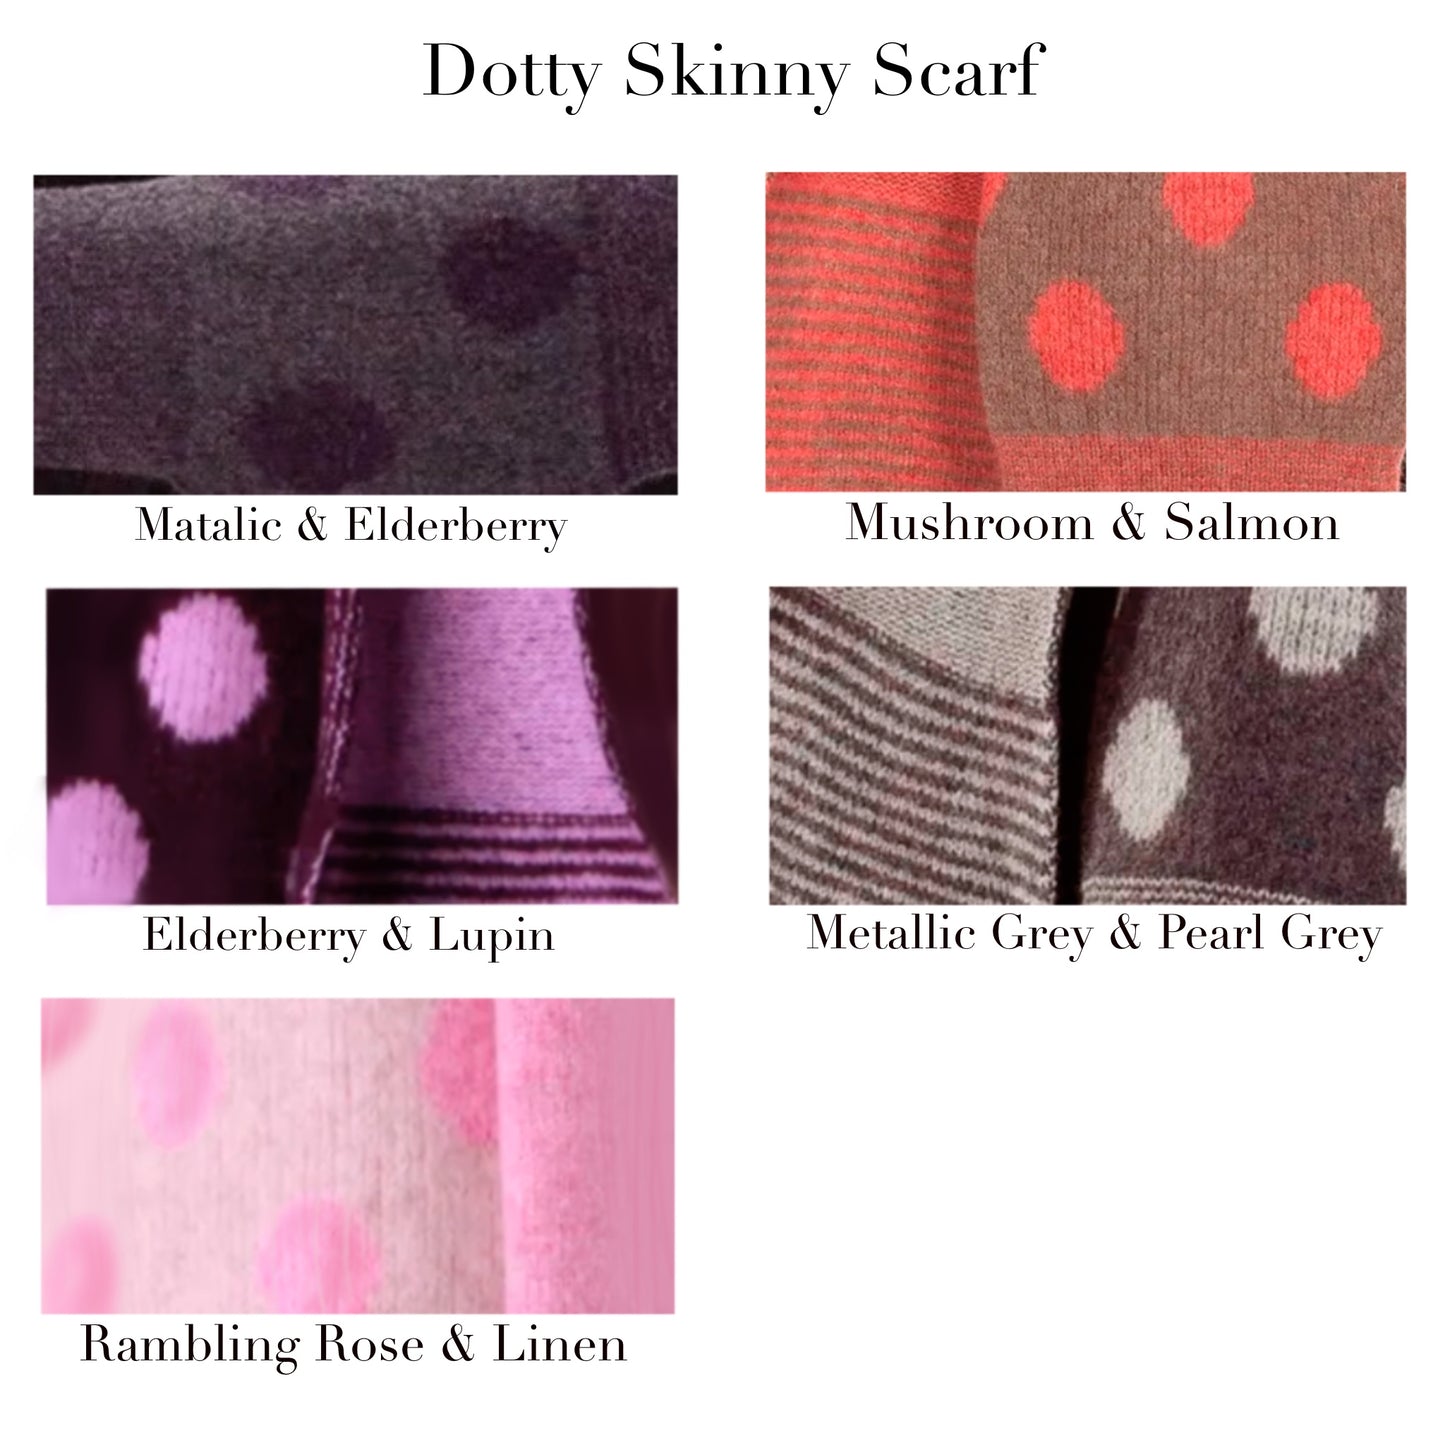 Dotty Skinny Scarf